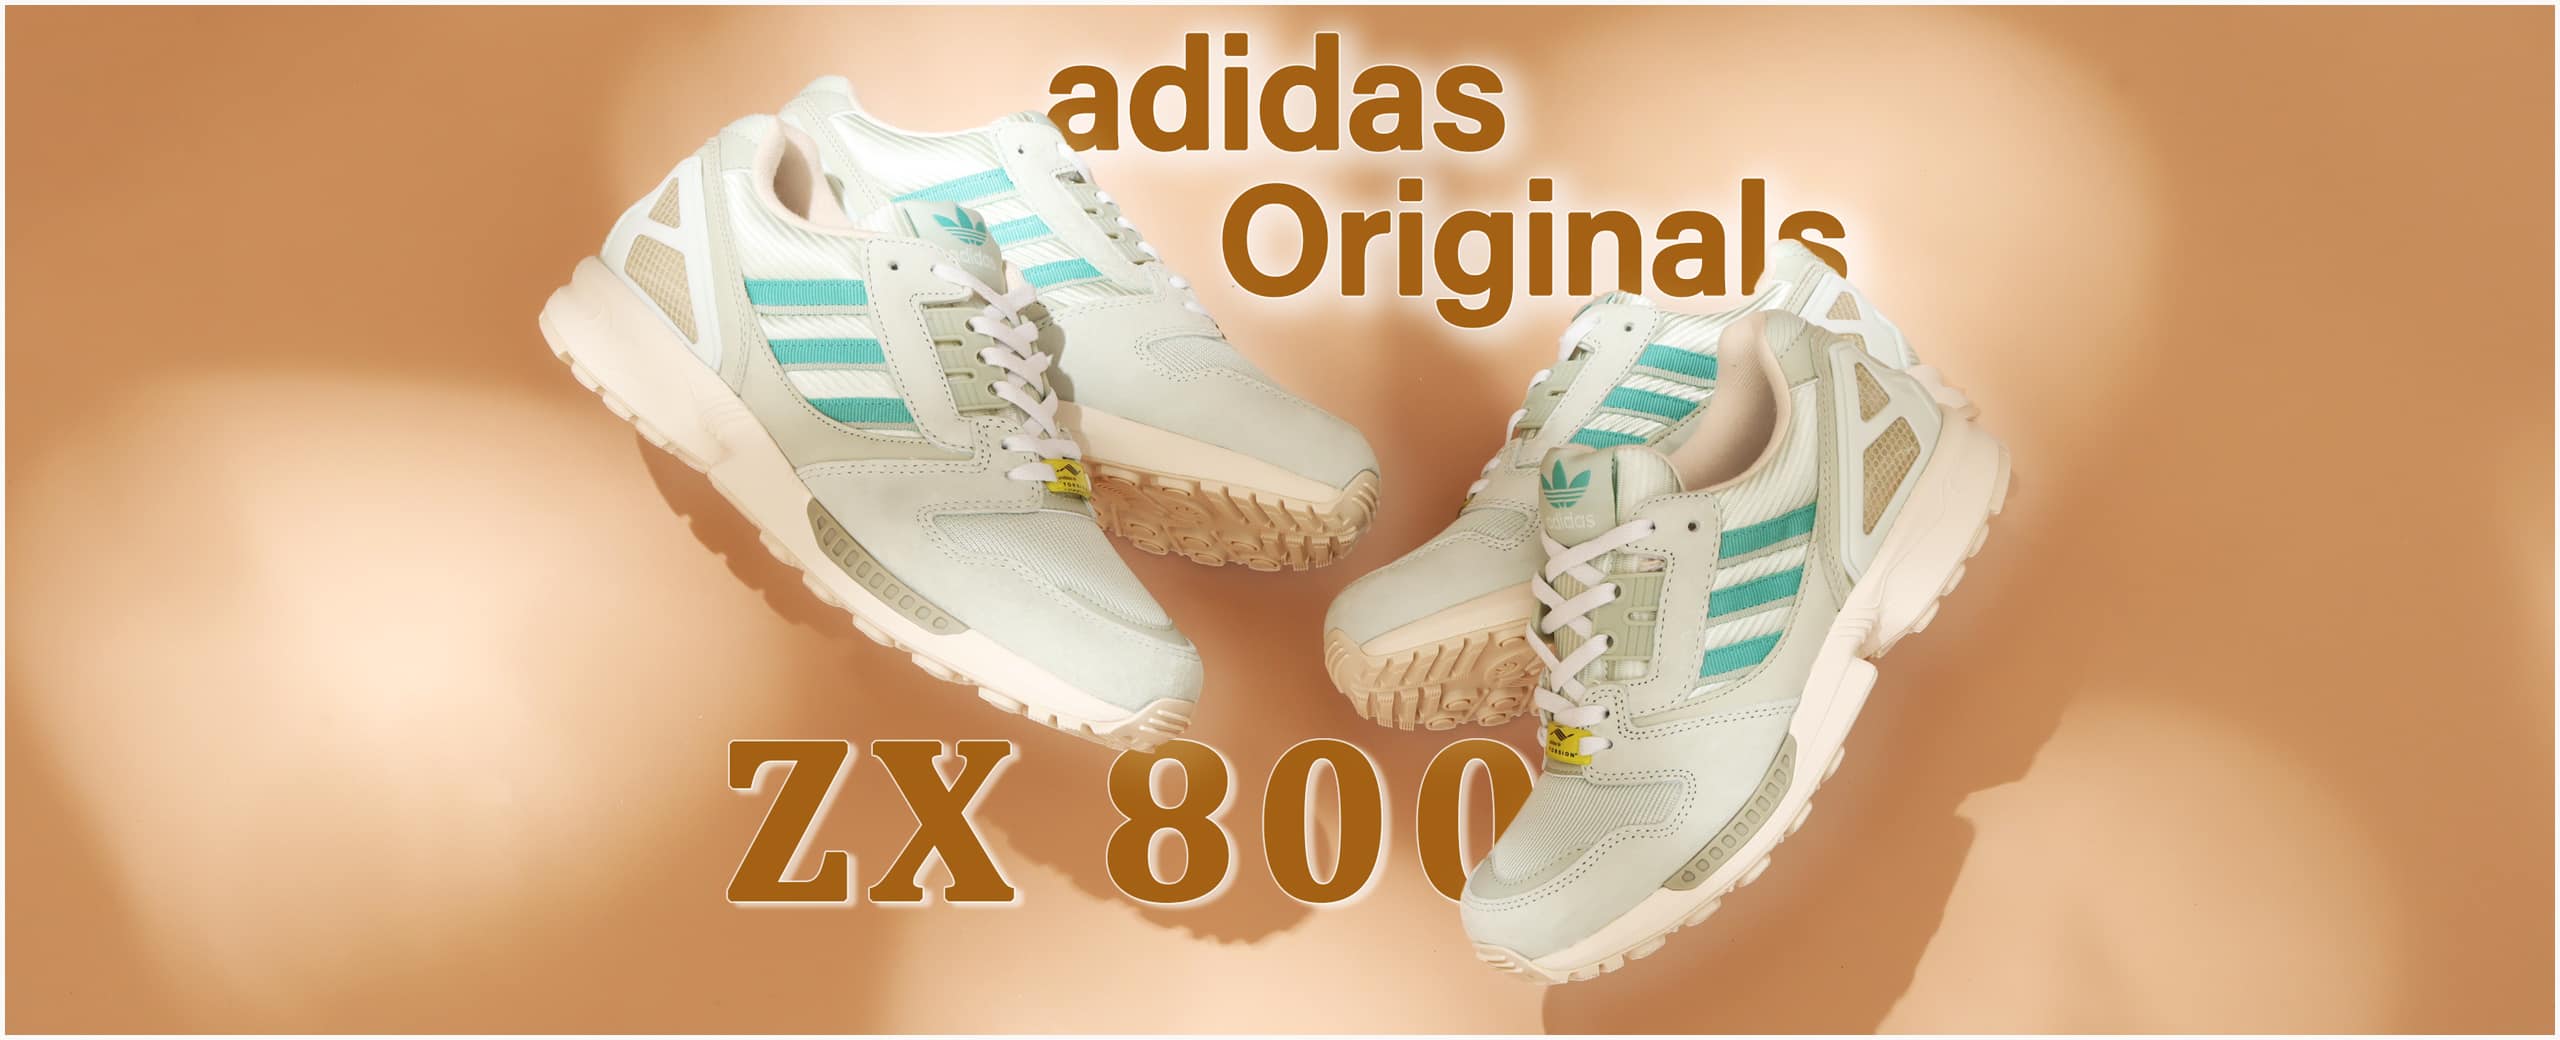 adidas-zx-8000-0619